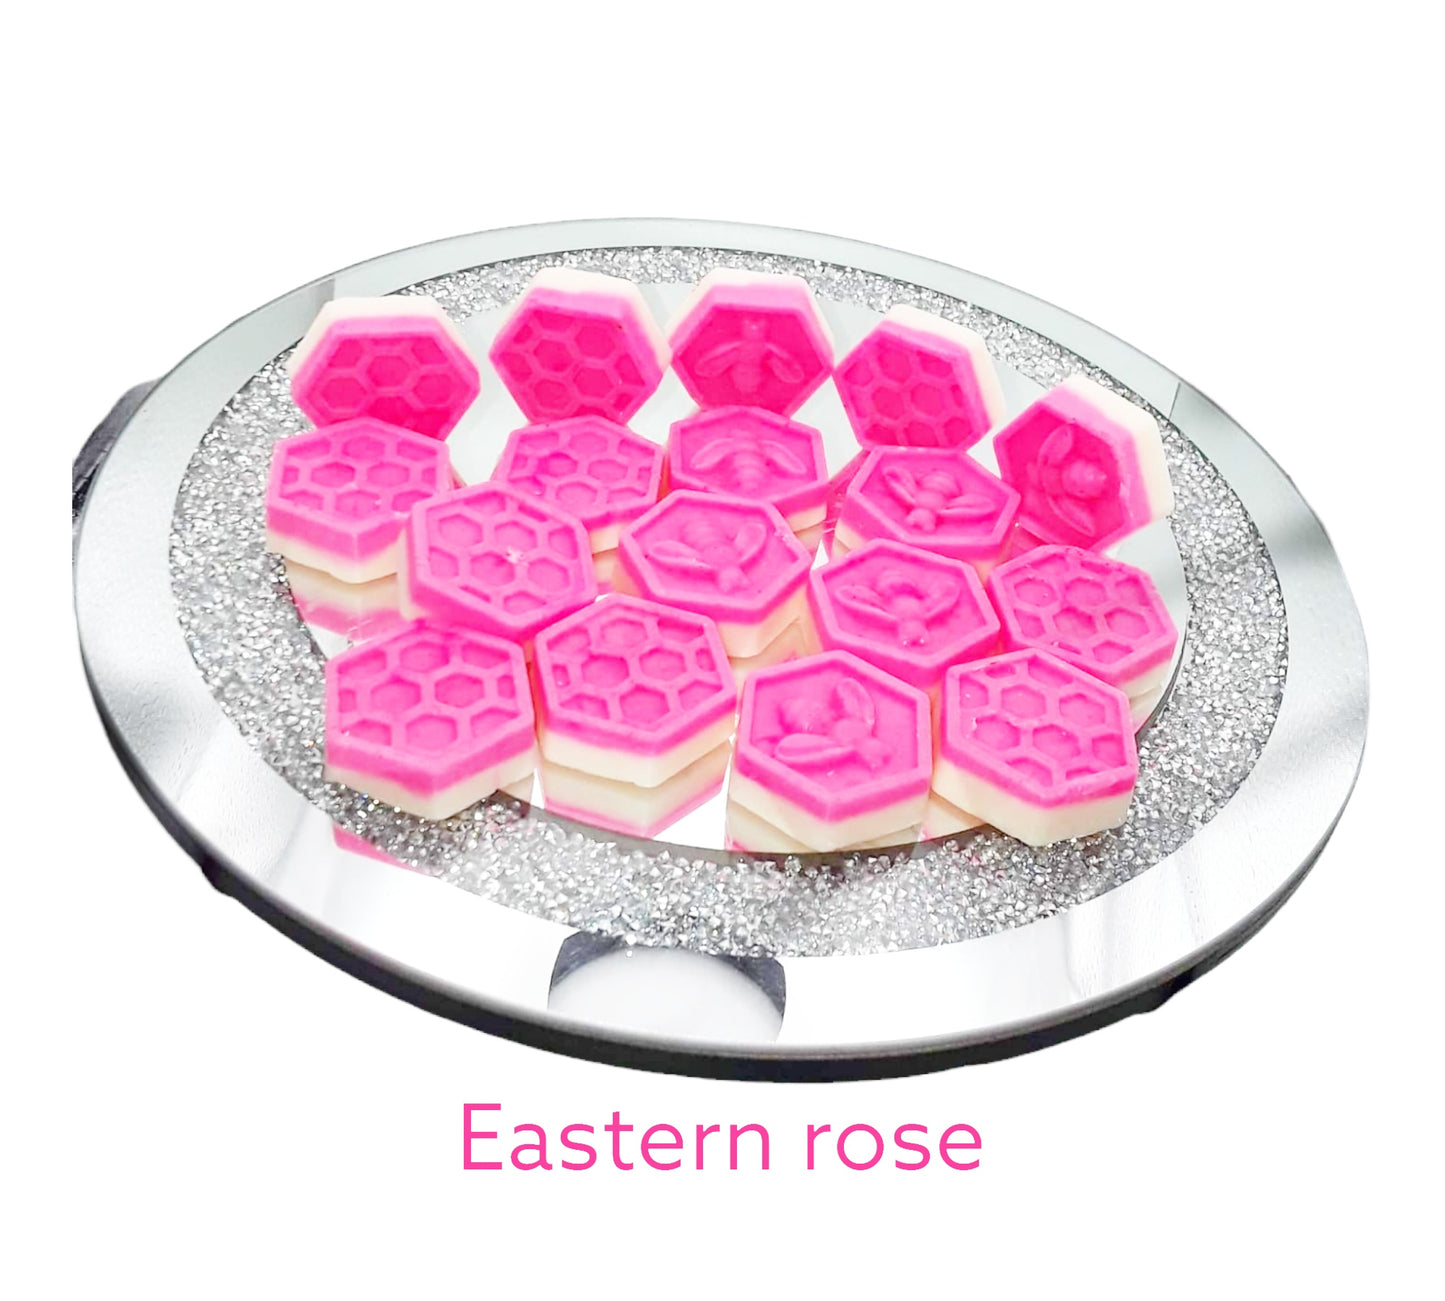 Eastern rose beehives